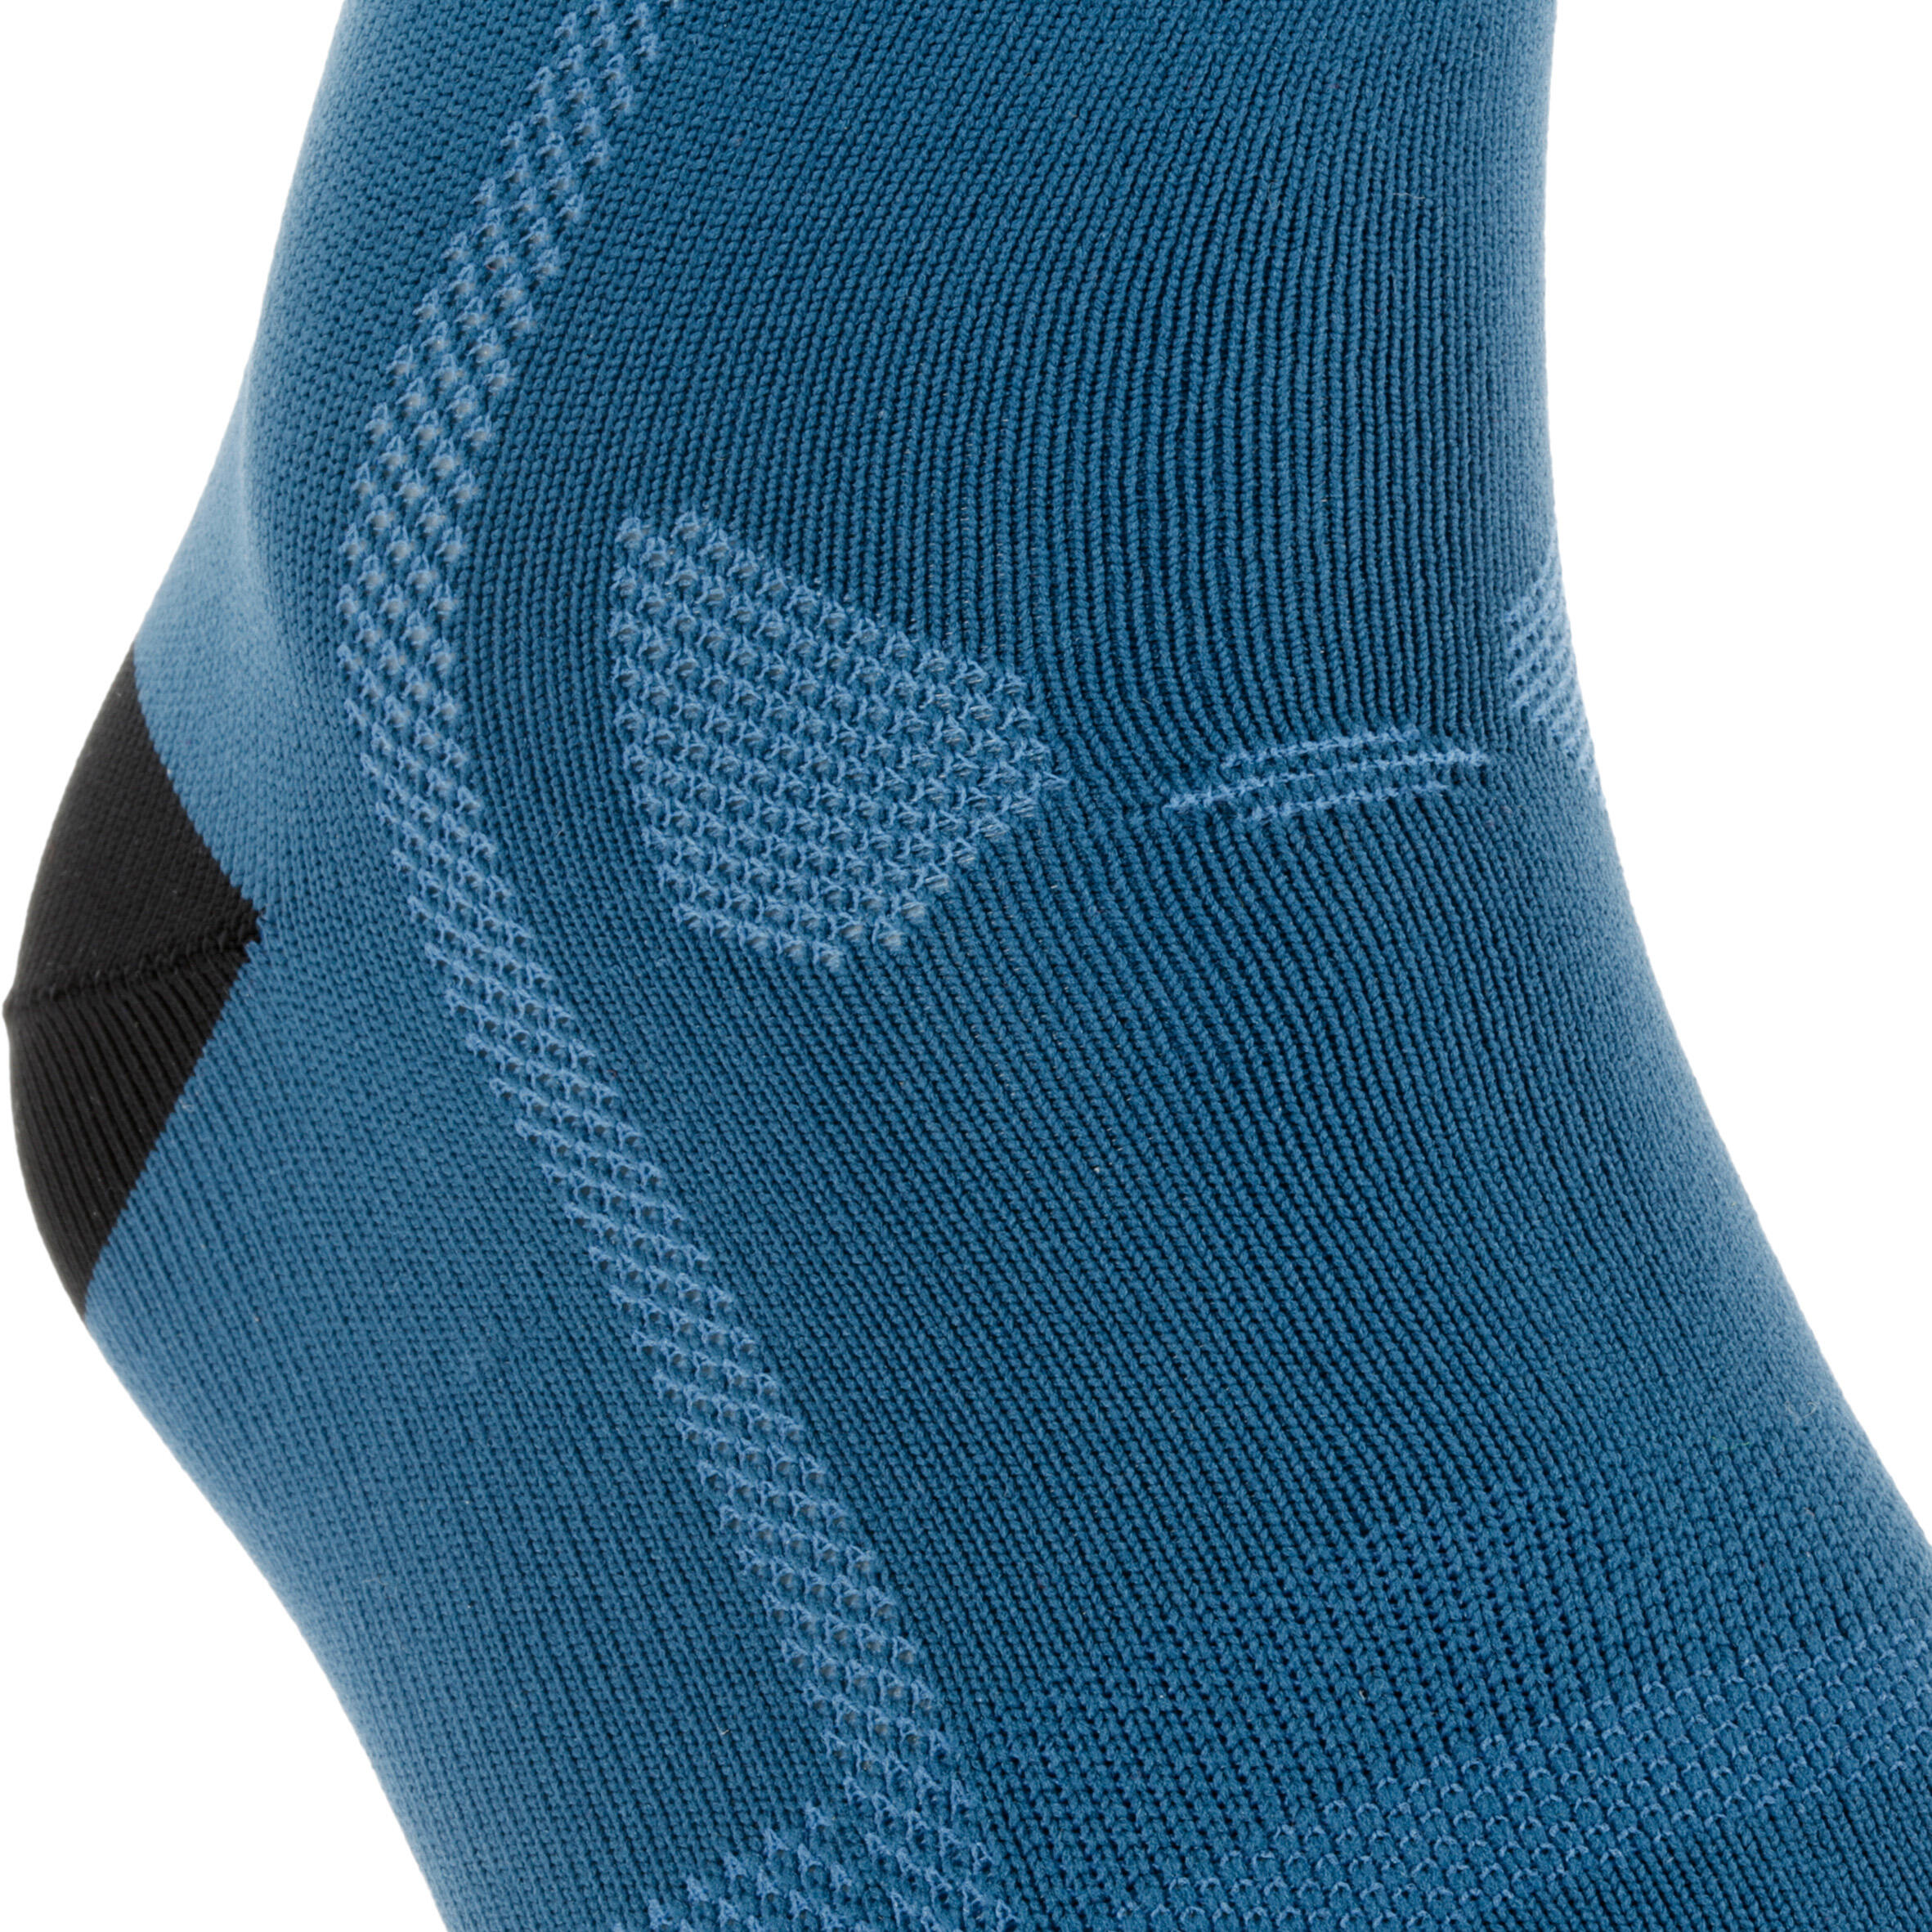 500 Cycling Socks - Dark Blue 4/8